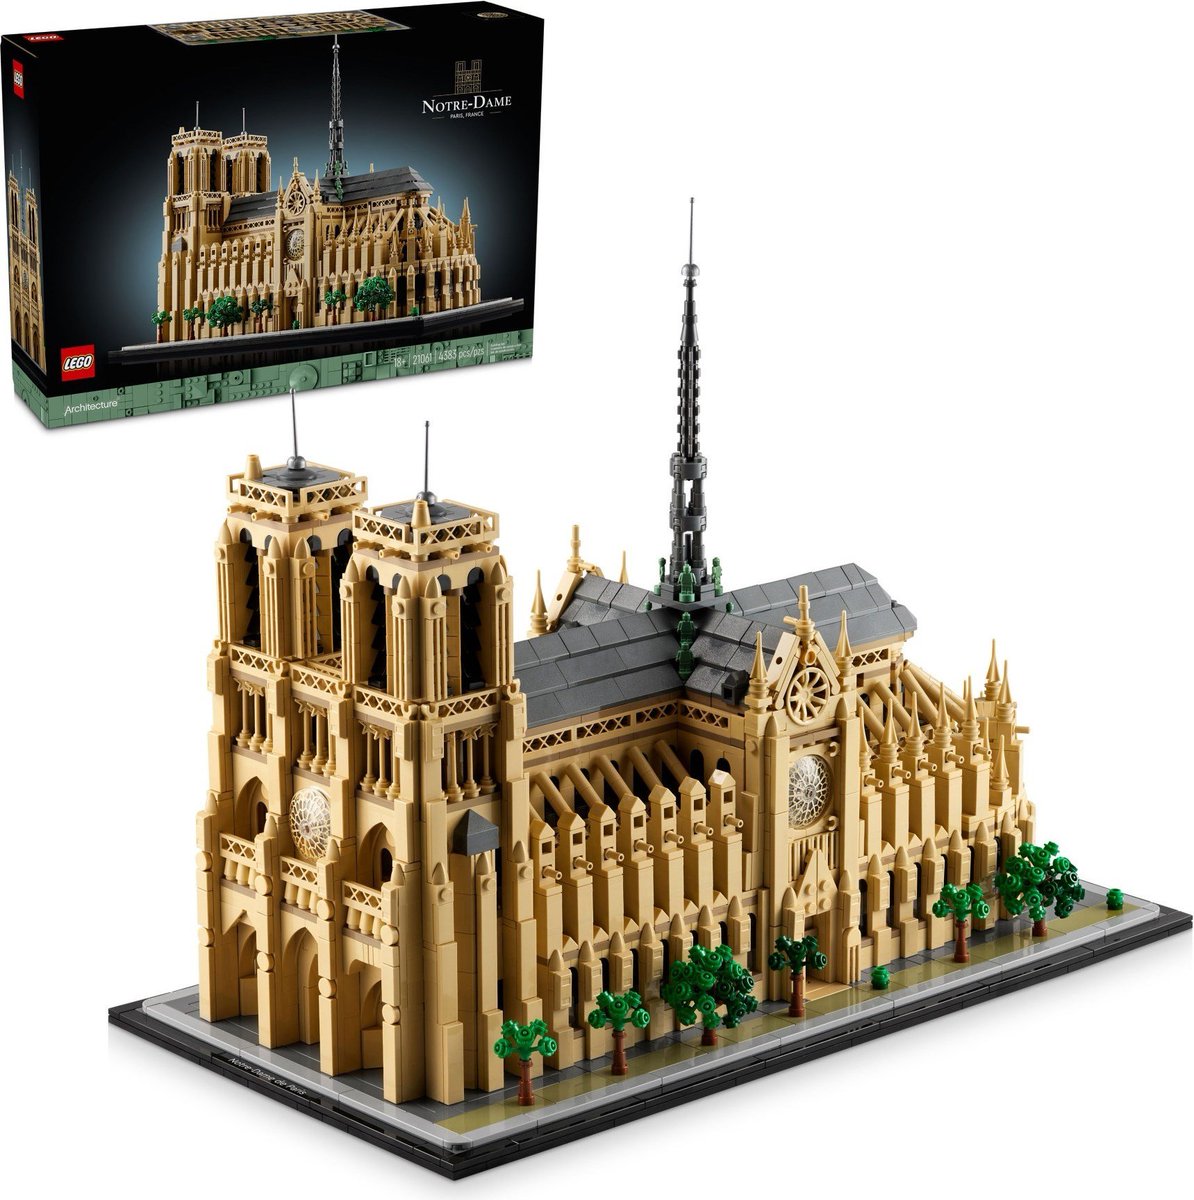 New LEGO Architecture Notre-Dame de Paris Set Revealed! 

#NotreDameDeParis #LegoArchitecture #Lego